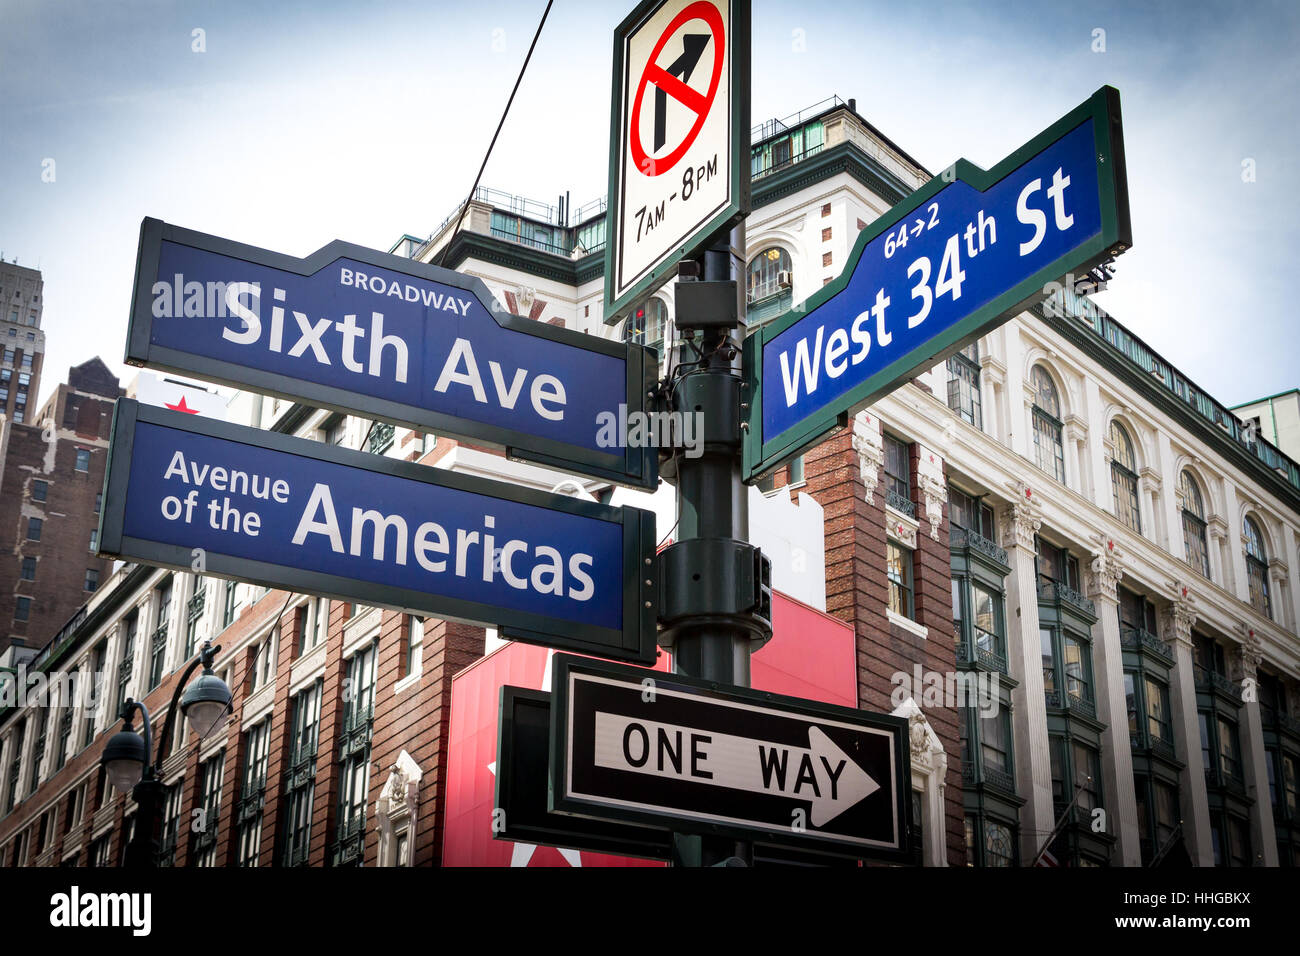 Intersezione segni di Broadway, sesta Avenue e West 34th Street vicino a Herald Square nel centro cittadino di Manhattan, New York City NYC Foto Stock